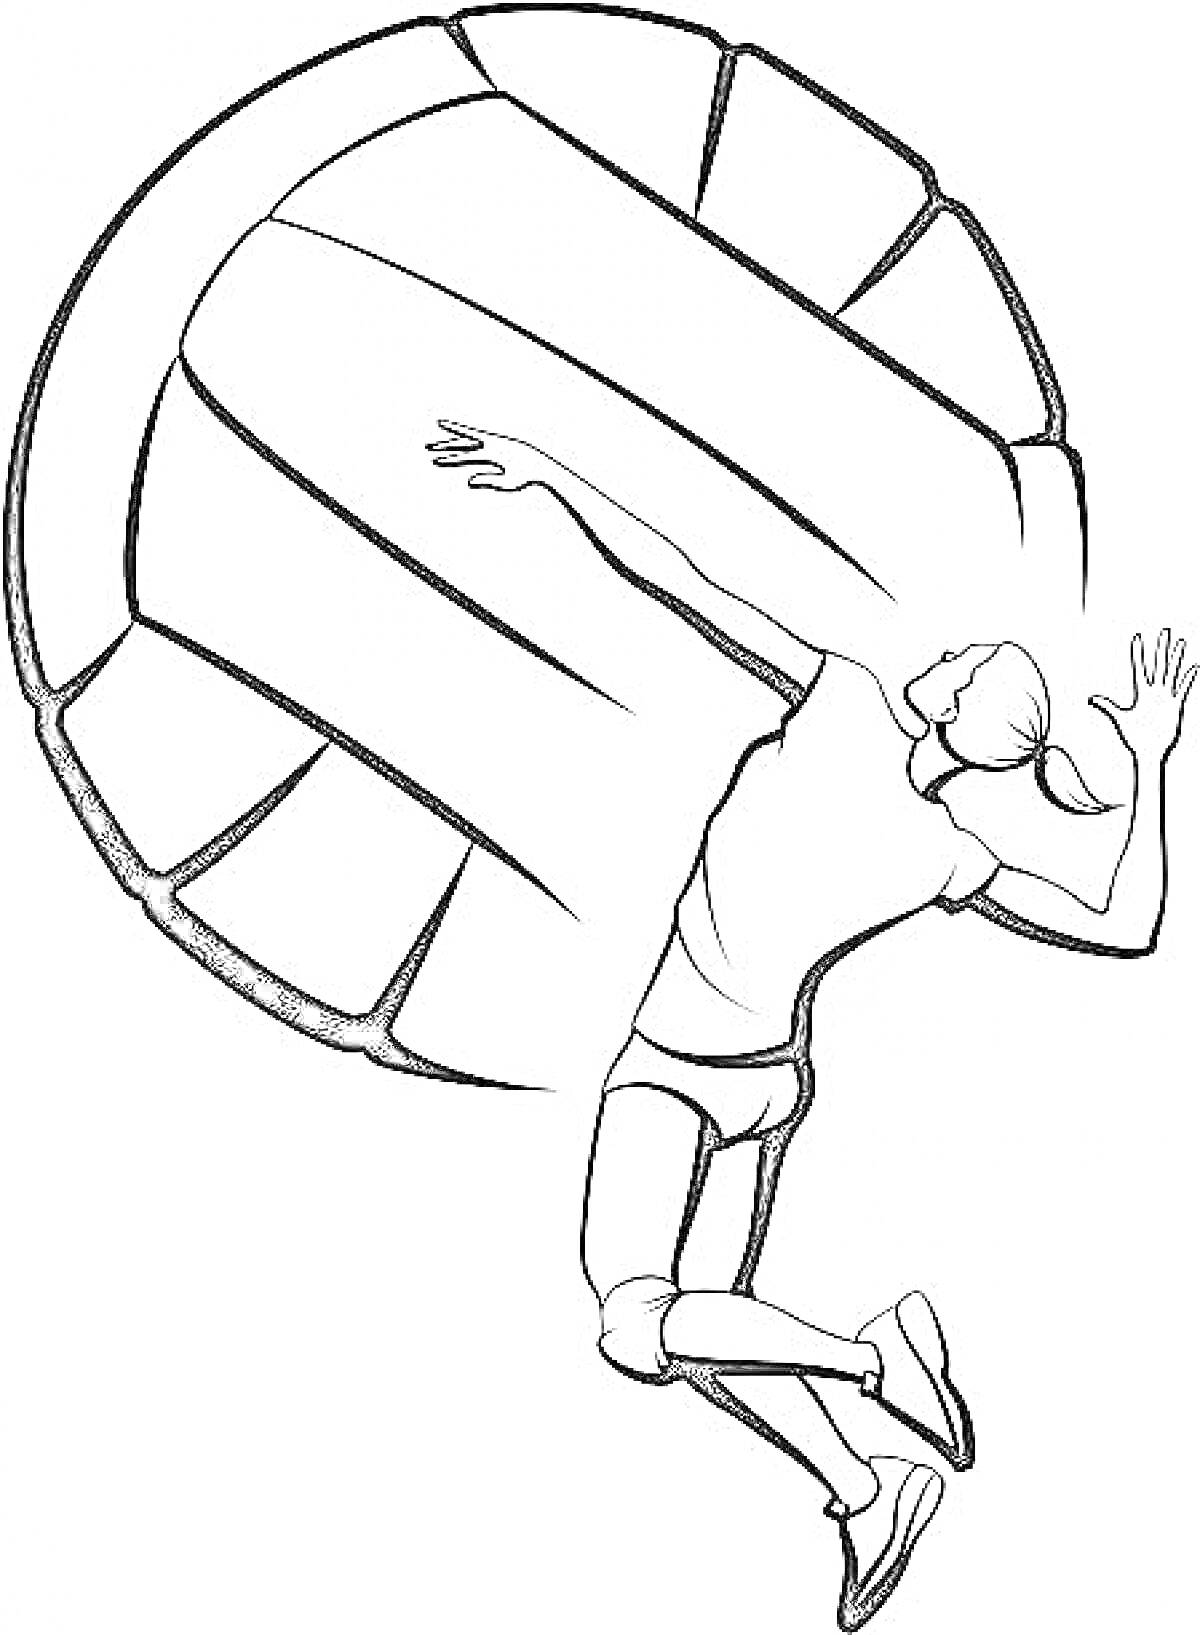 Волейболистка во время прыжка и большой волейбольный мяч